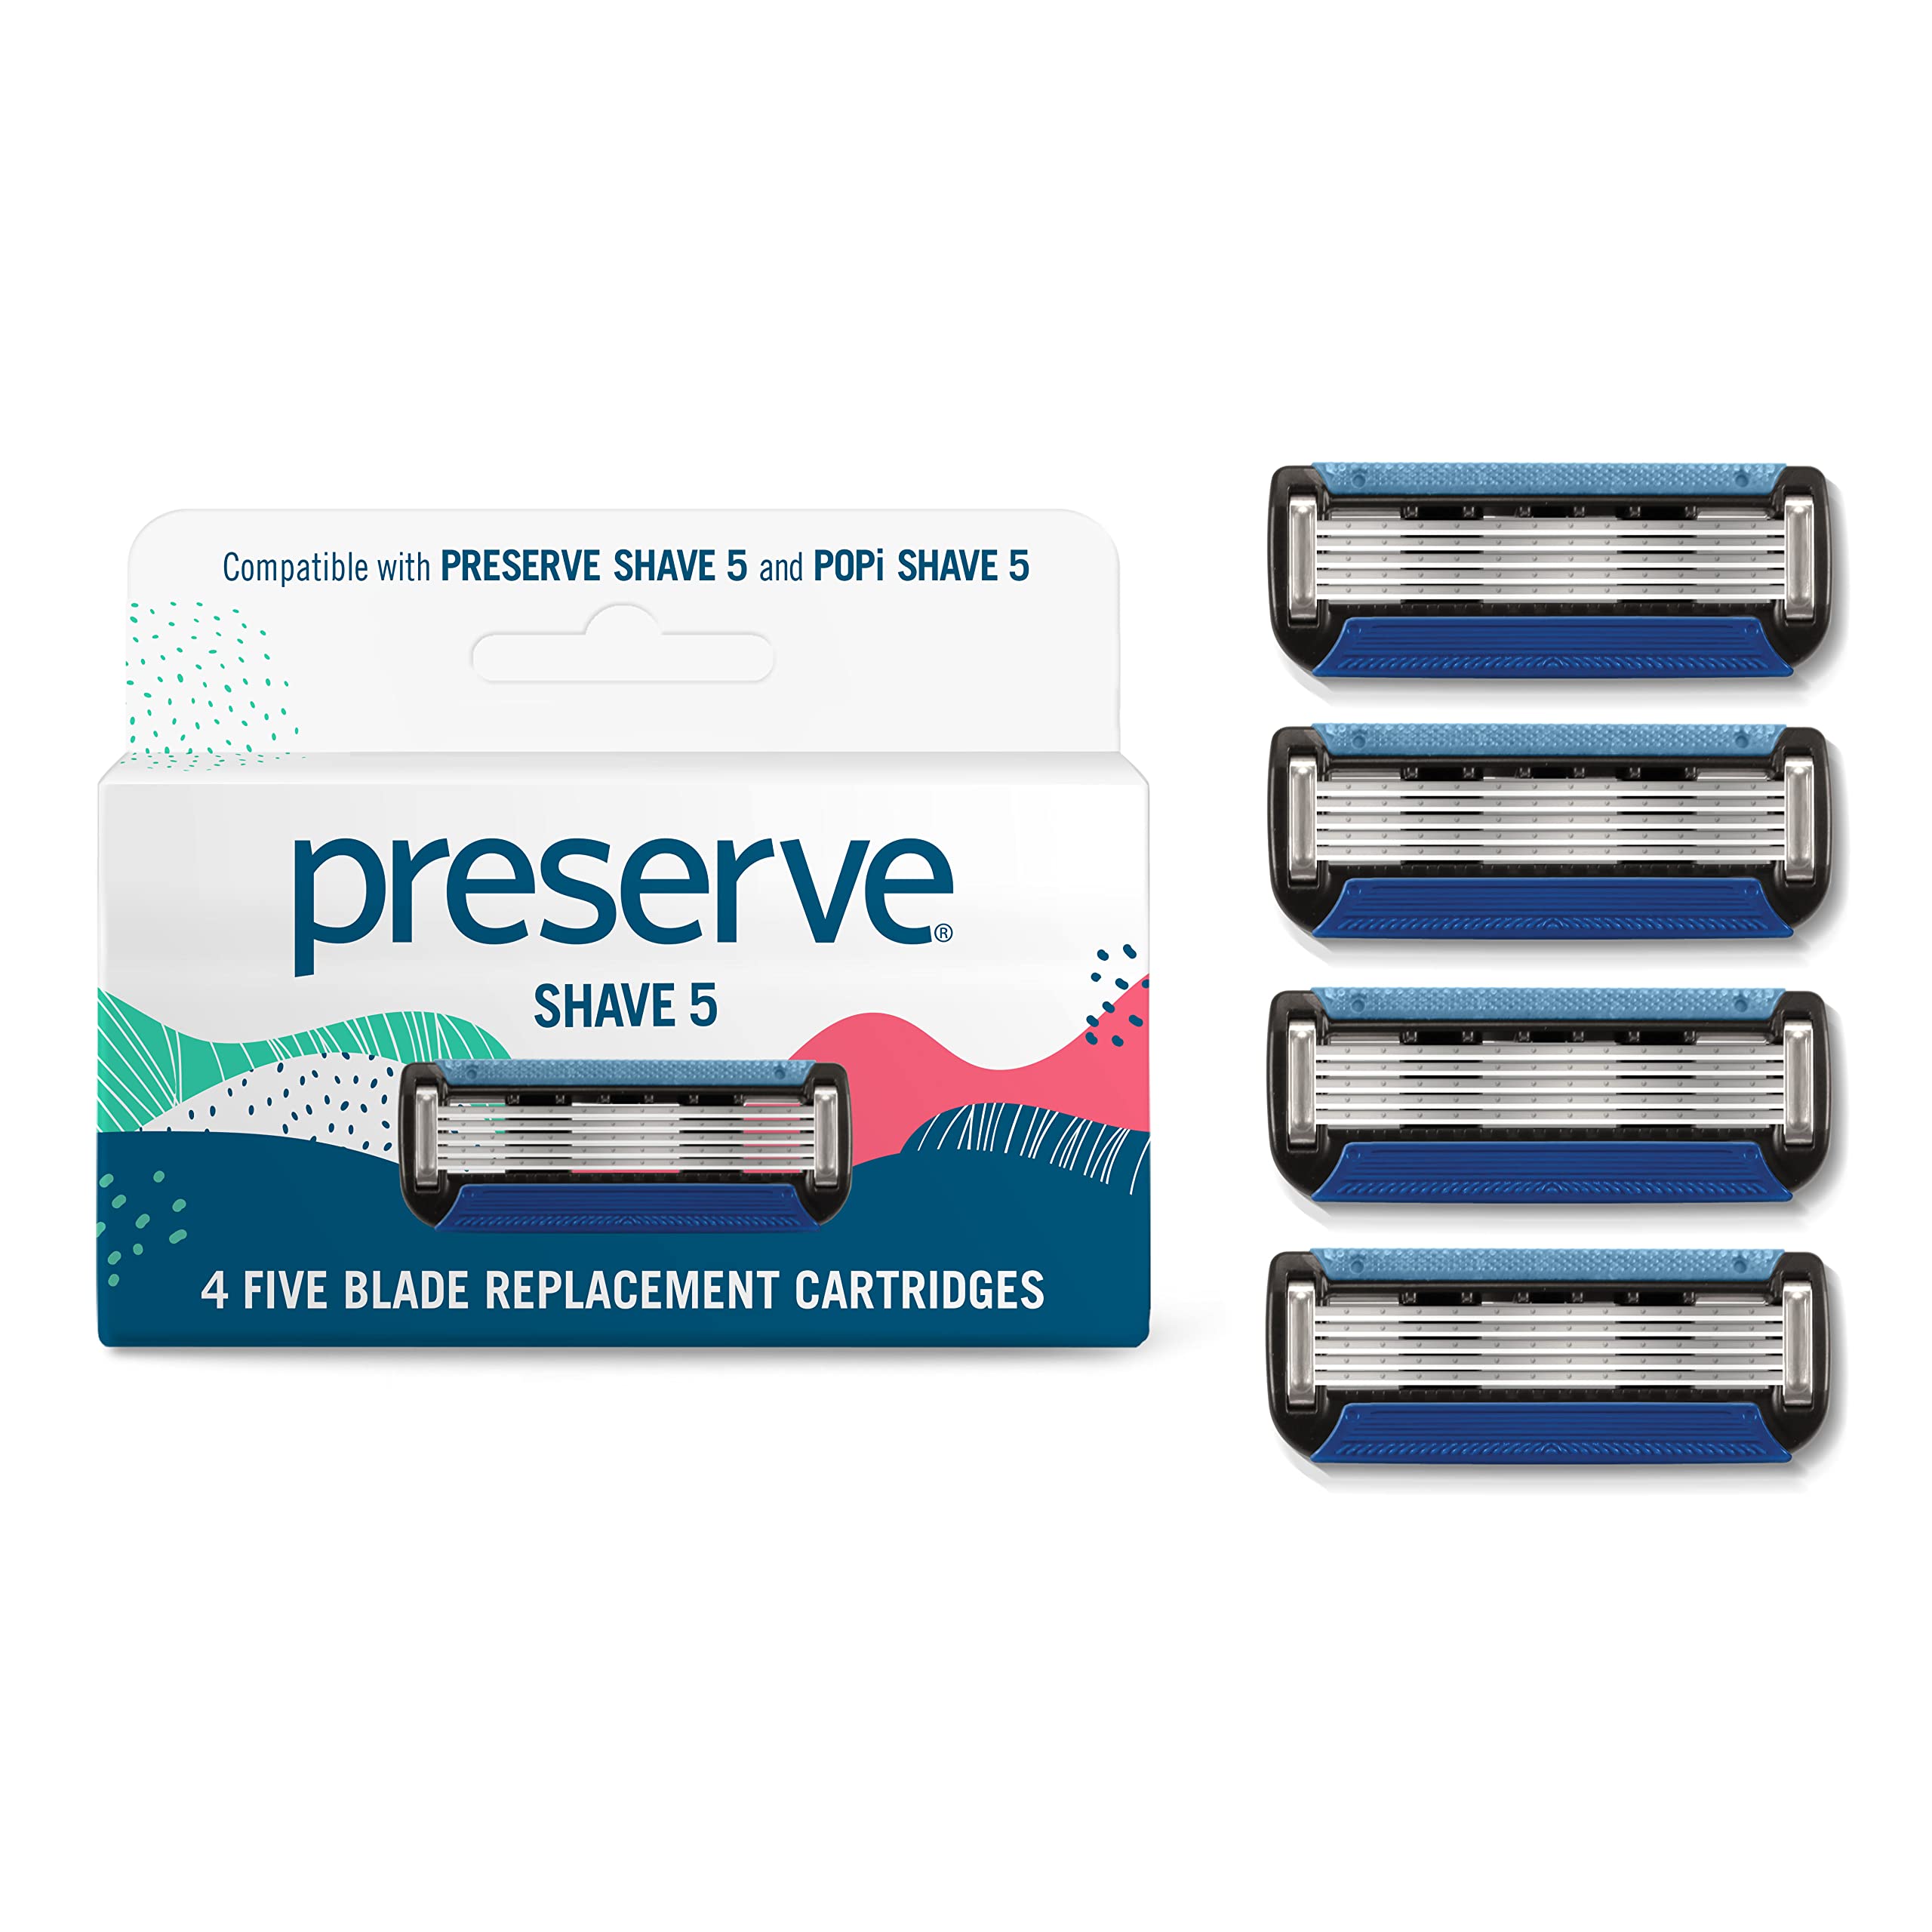 Preserve Shave 5 Ersatzklingen für Preserve Shave 5 Rasierer, 1 Pack mit 4 Klingen (nur kompatibel mit Preserve Shave 5)